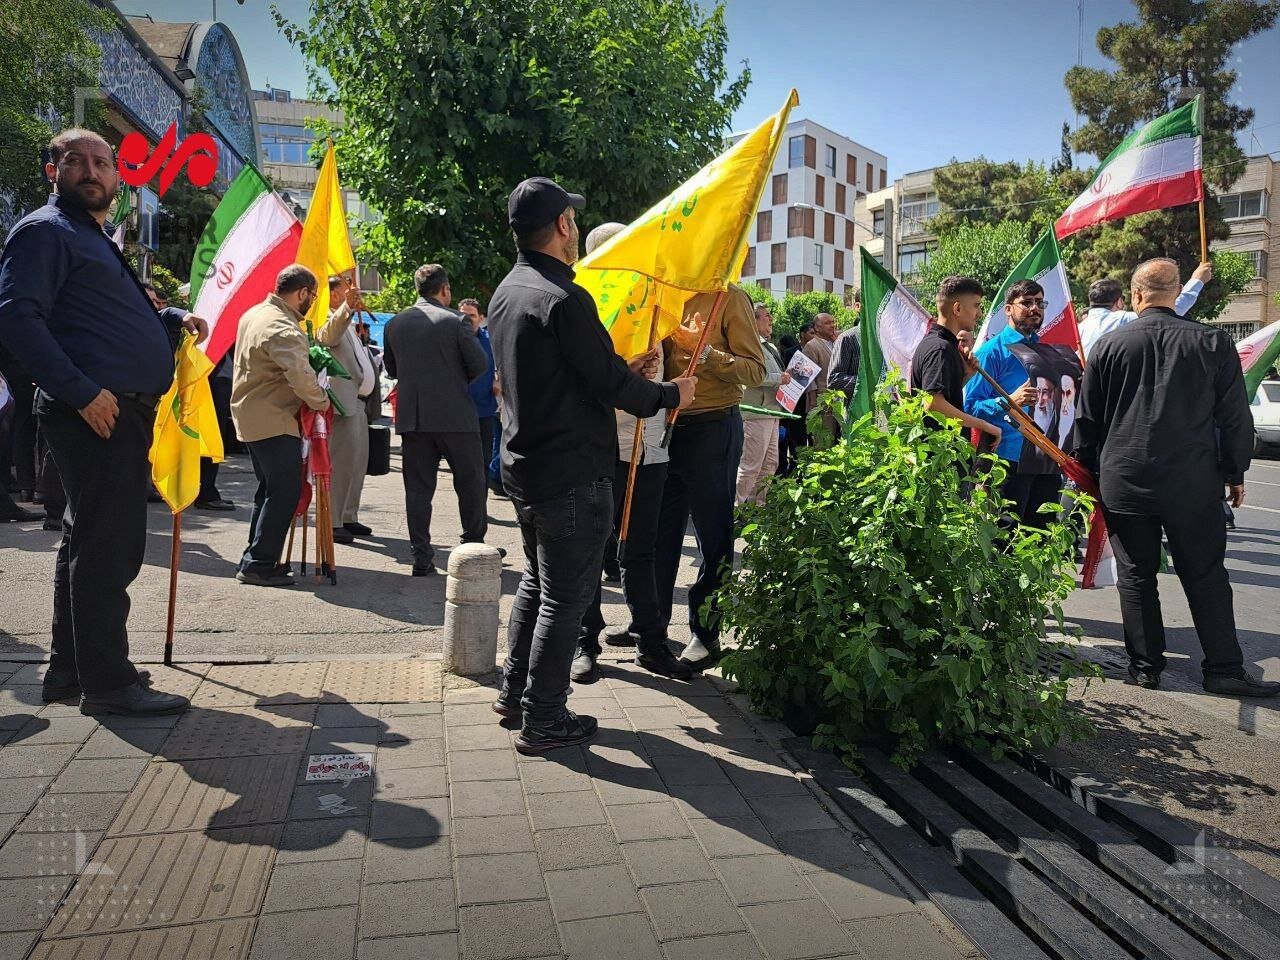 تصویری جالب از طرفداران به صف شده قالیباف در جلوی وزارت کشور